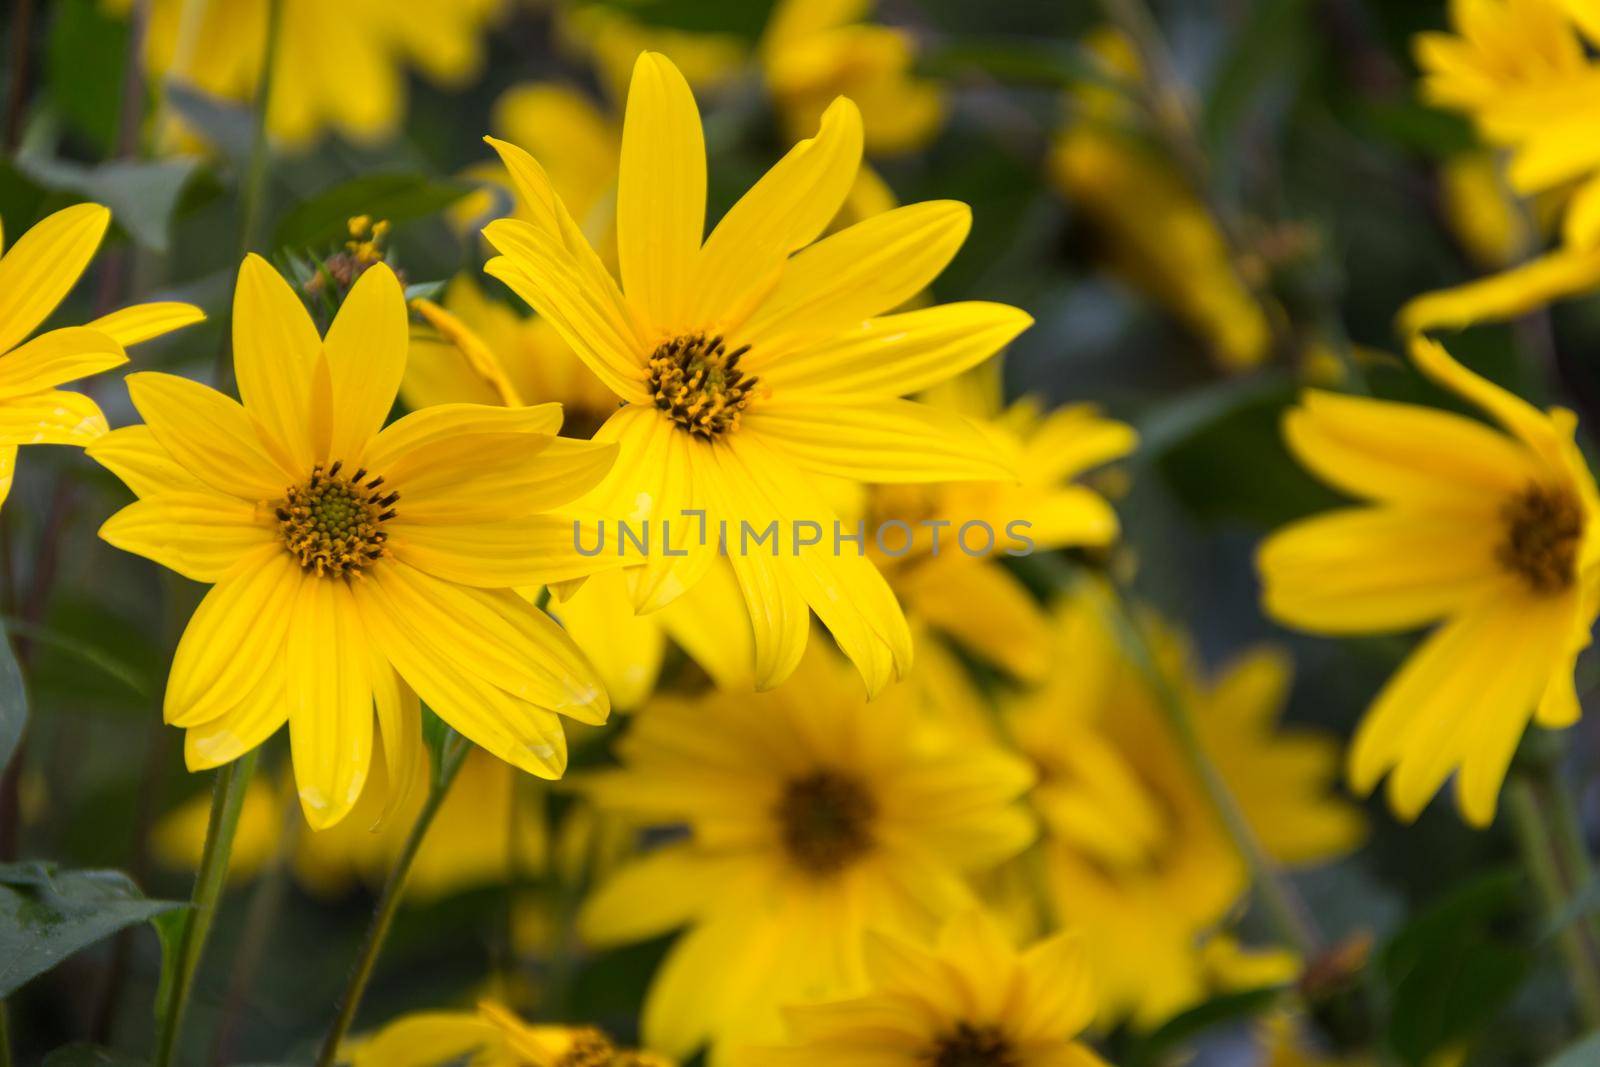 yellow flowers of the garden sunflower, Helianthus tuberosus or Jerusalem artichoke by GabrielaBertolini